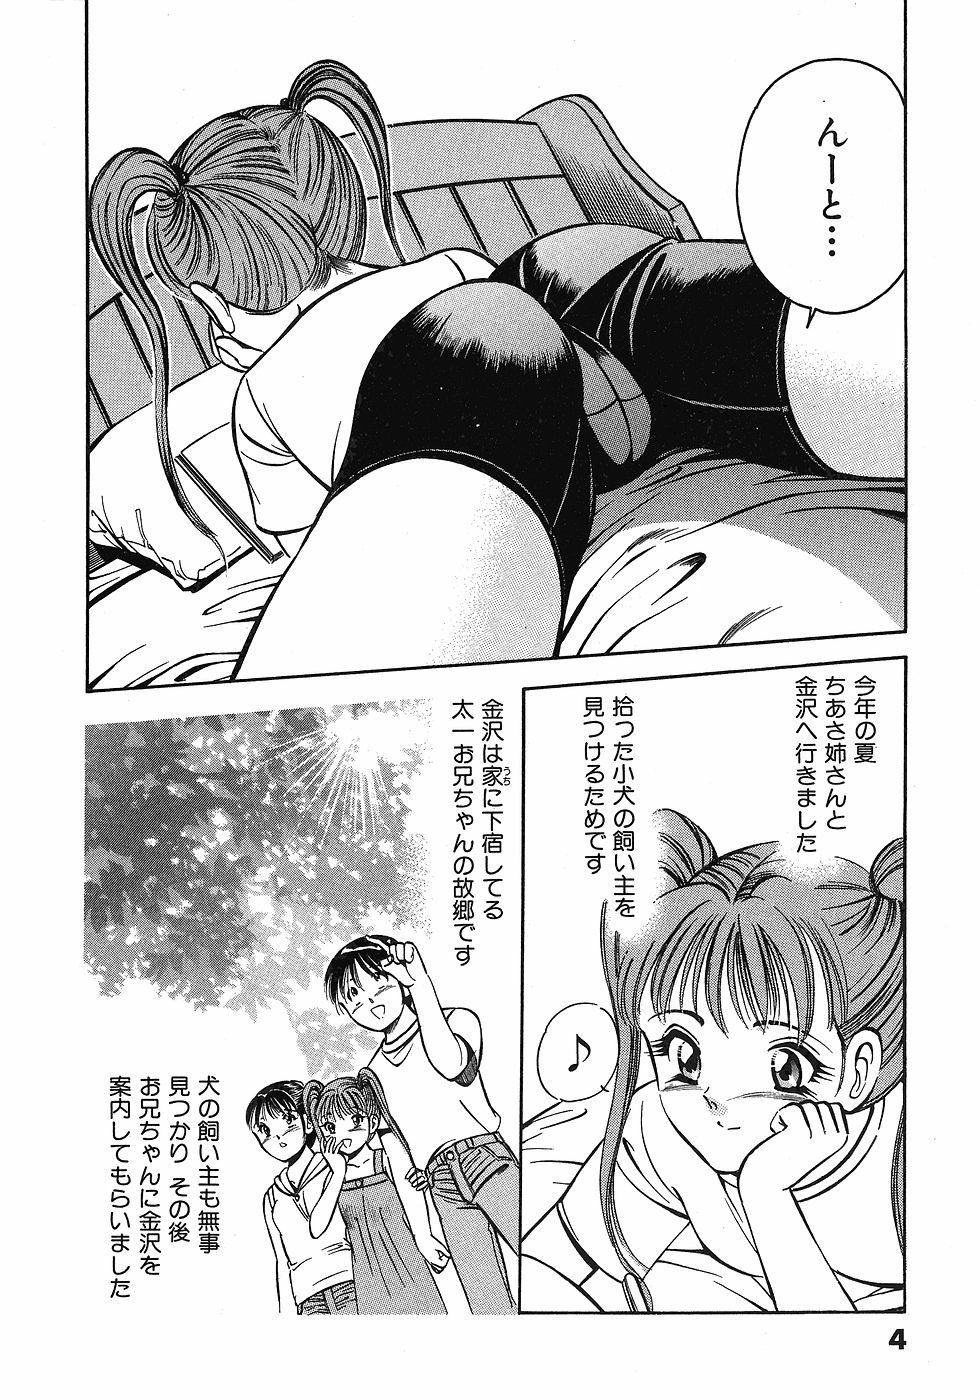  Motto Motto Koisuru 5 Byousen 3 Hot Women Having Sex - Page 9